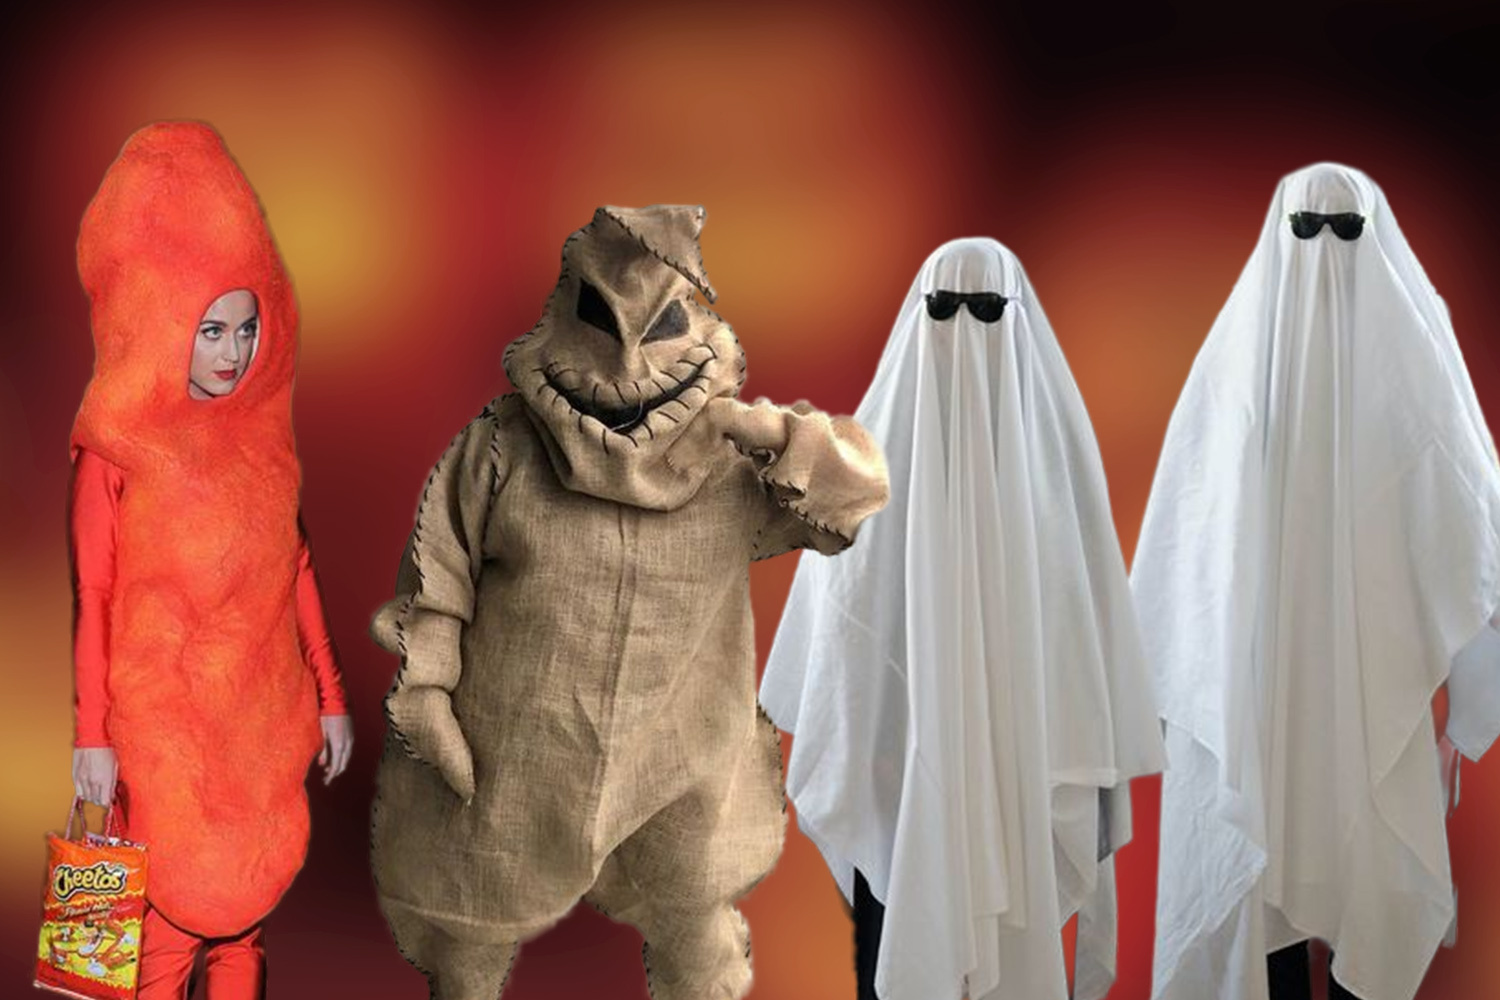 Образы на Хэллоуин для детей